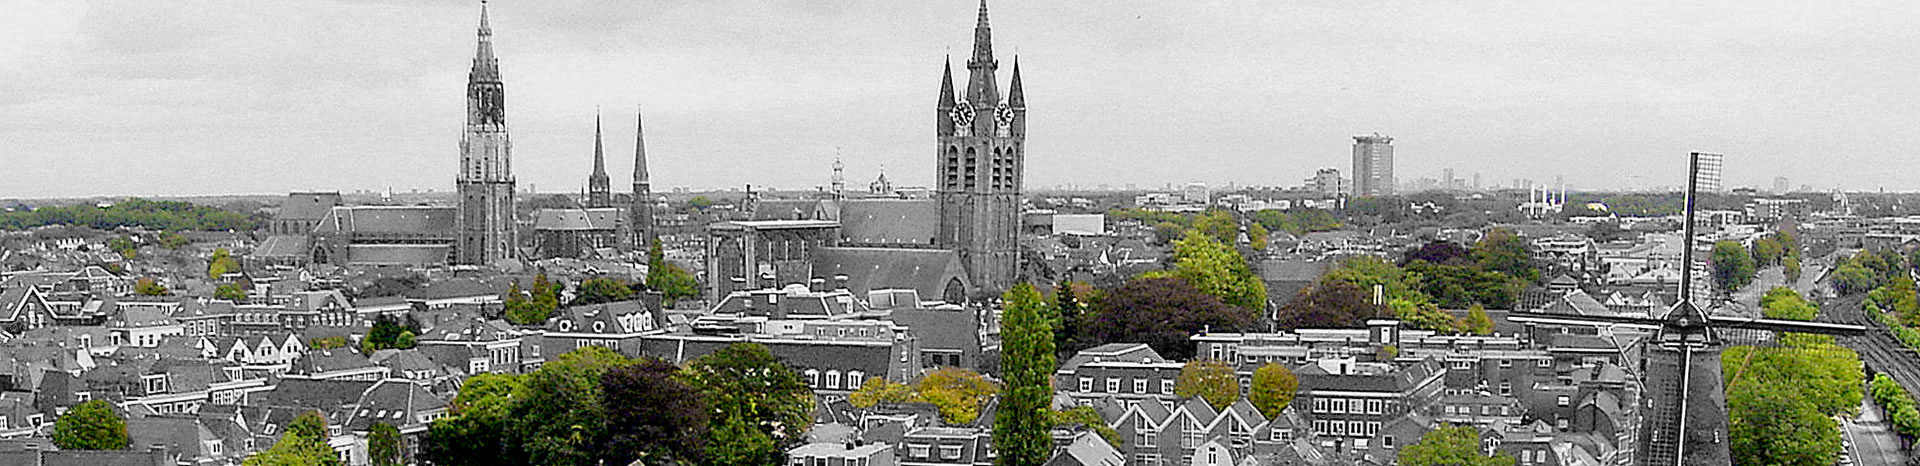 Letselschade advocaat Delft en omgeving | LetselPro